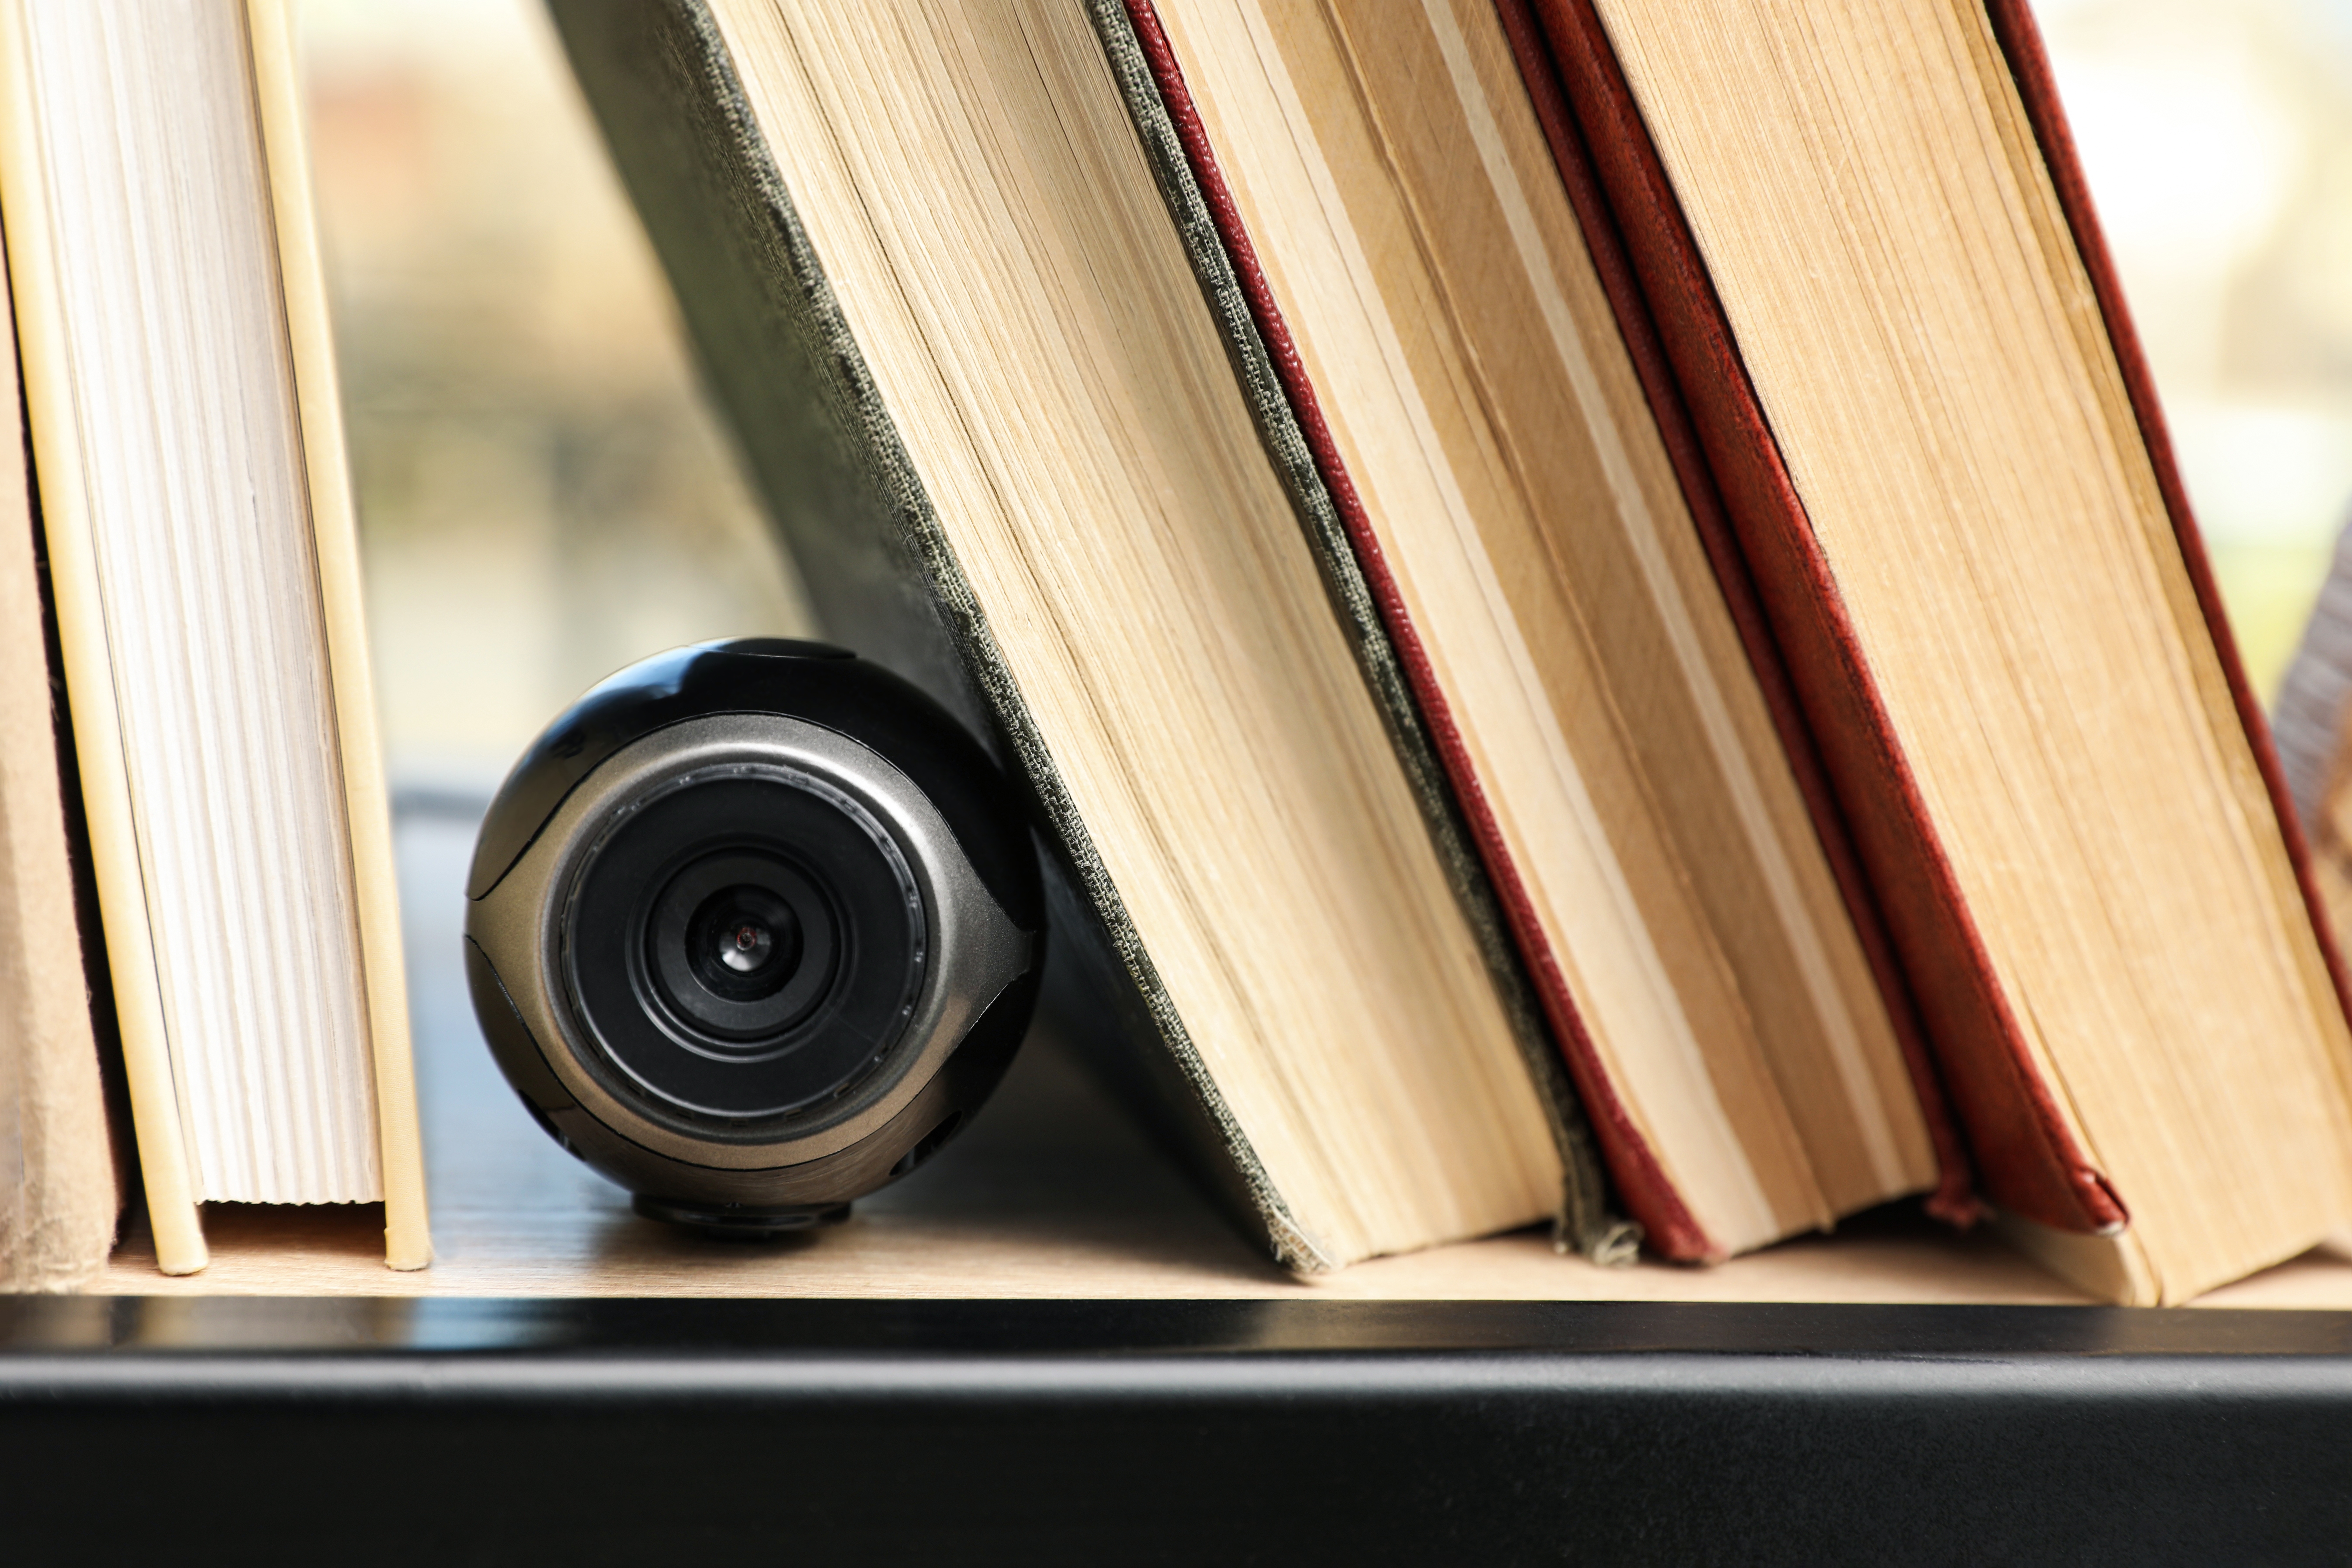 Une caméra cachée parmi des livres | Source : Shutterstock